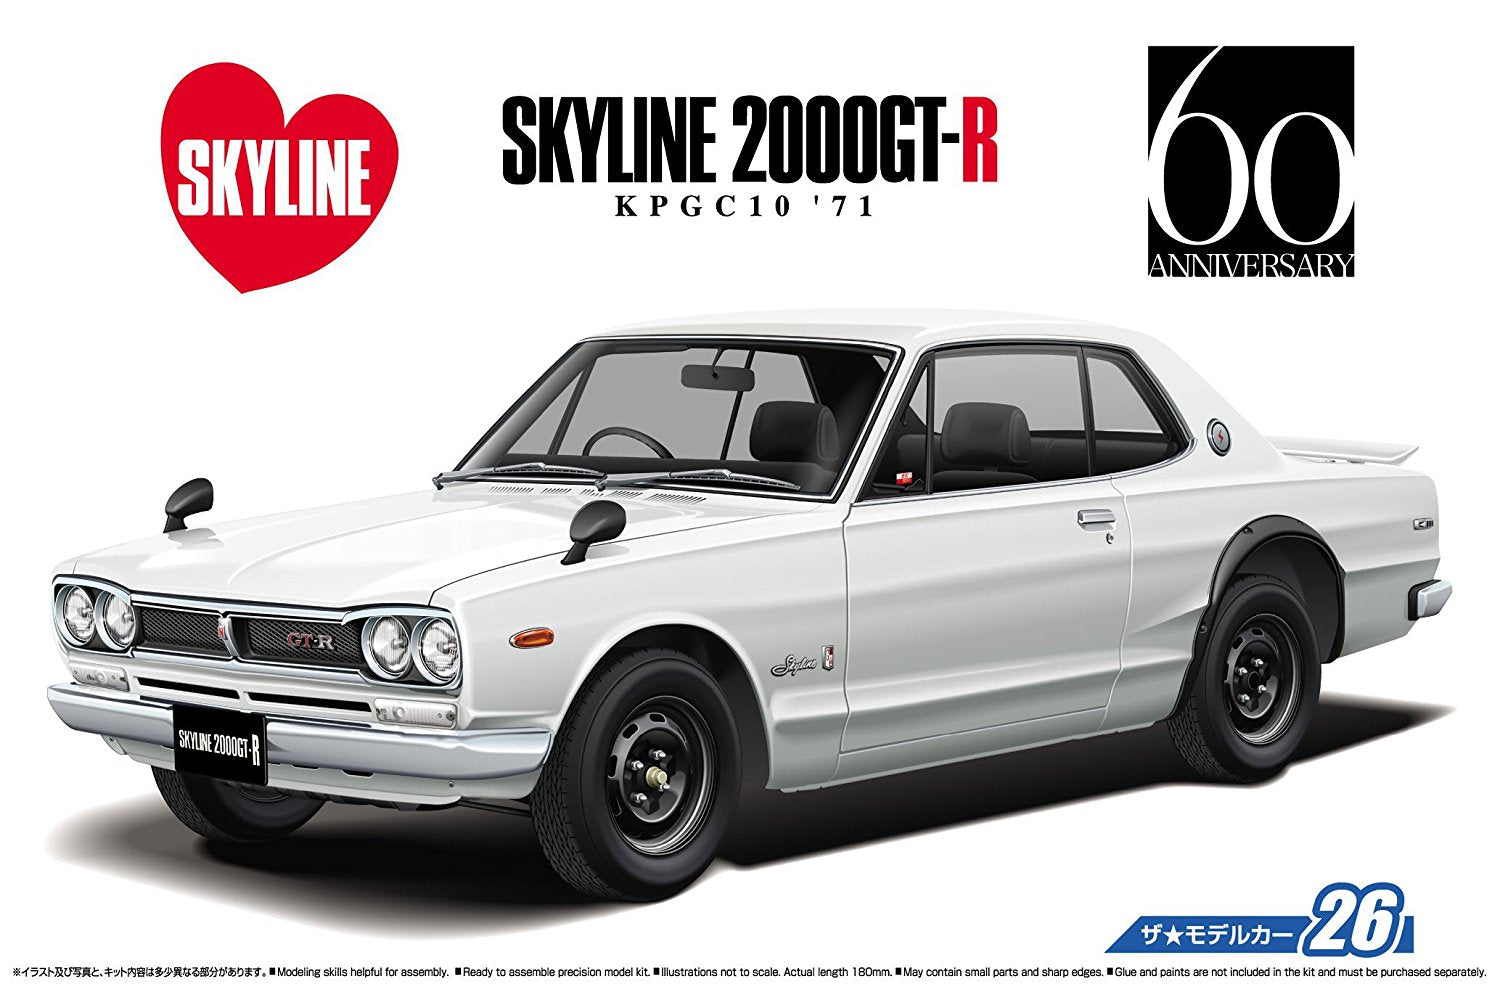 Nissan KPGC10 Skyline HT2000GT-R 1971